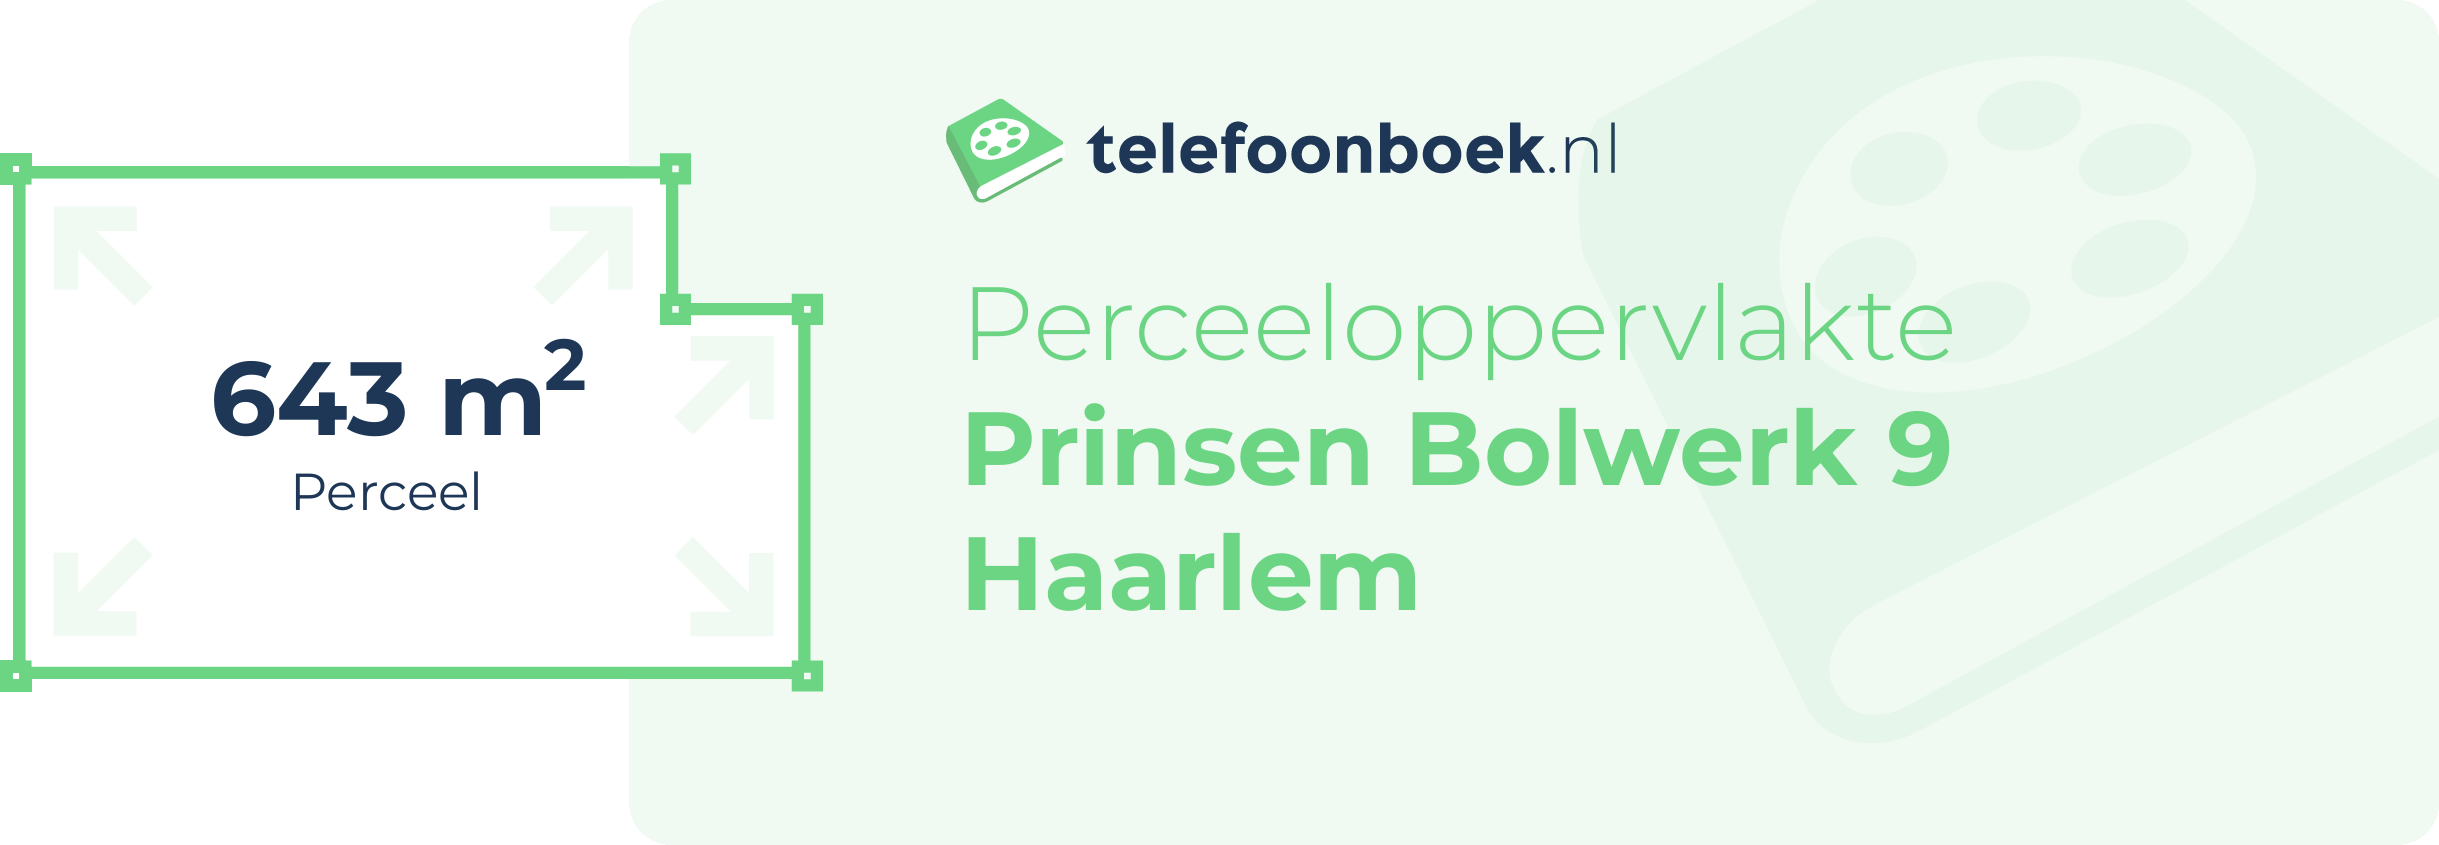 Perceeloppervlakte Prinsen Bolwerk 9 Haarlem